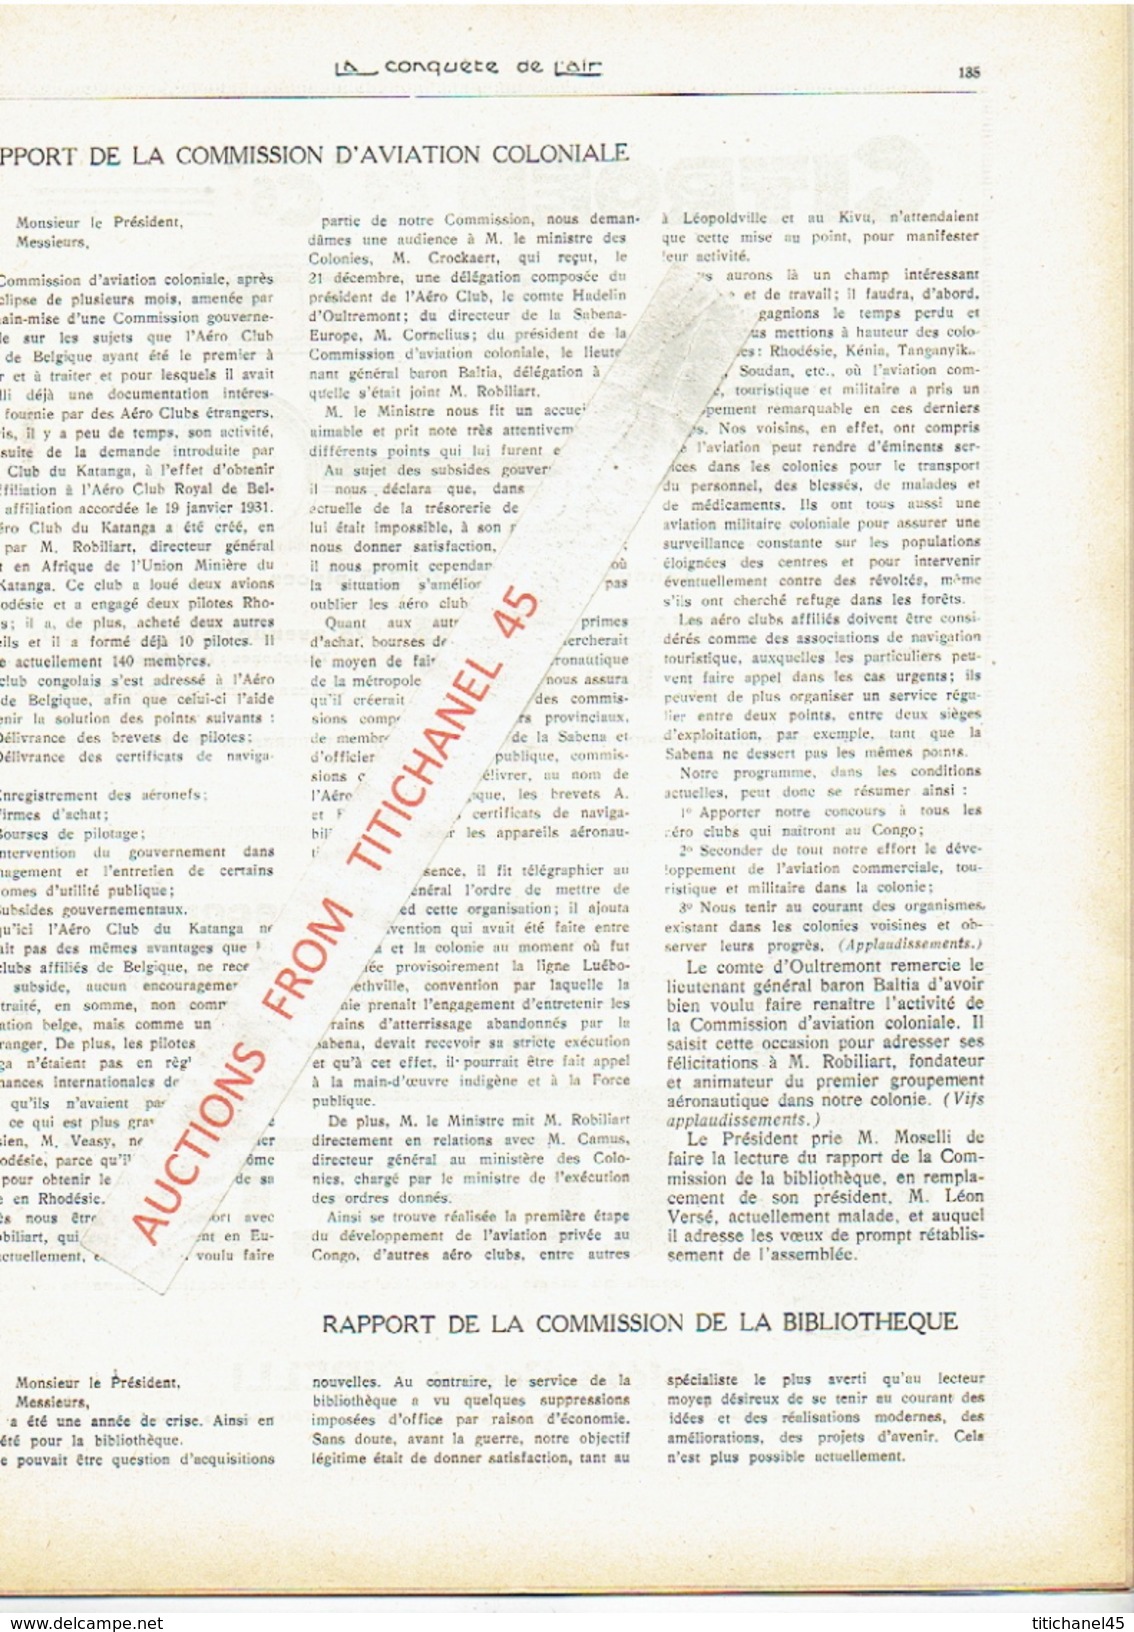 LA CONQUETE DE L'AIR 1932 n°3 -SABENA-CONGO-MINERVA-HISPANO-SUIZA-SABCA-MUSTERLE-FORD-CHENARD-WALCKER-CITROEN-WILLYS